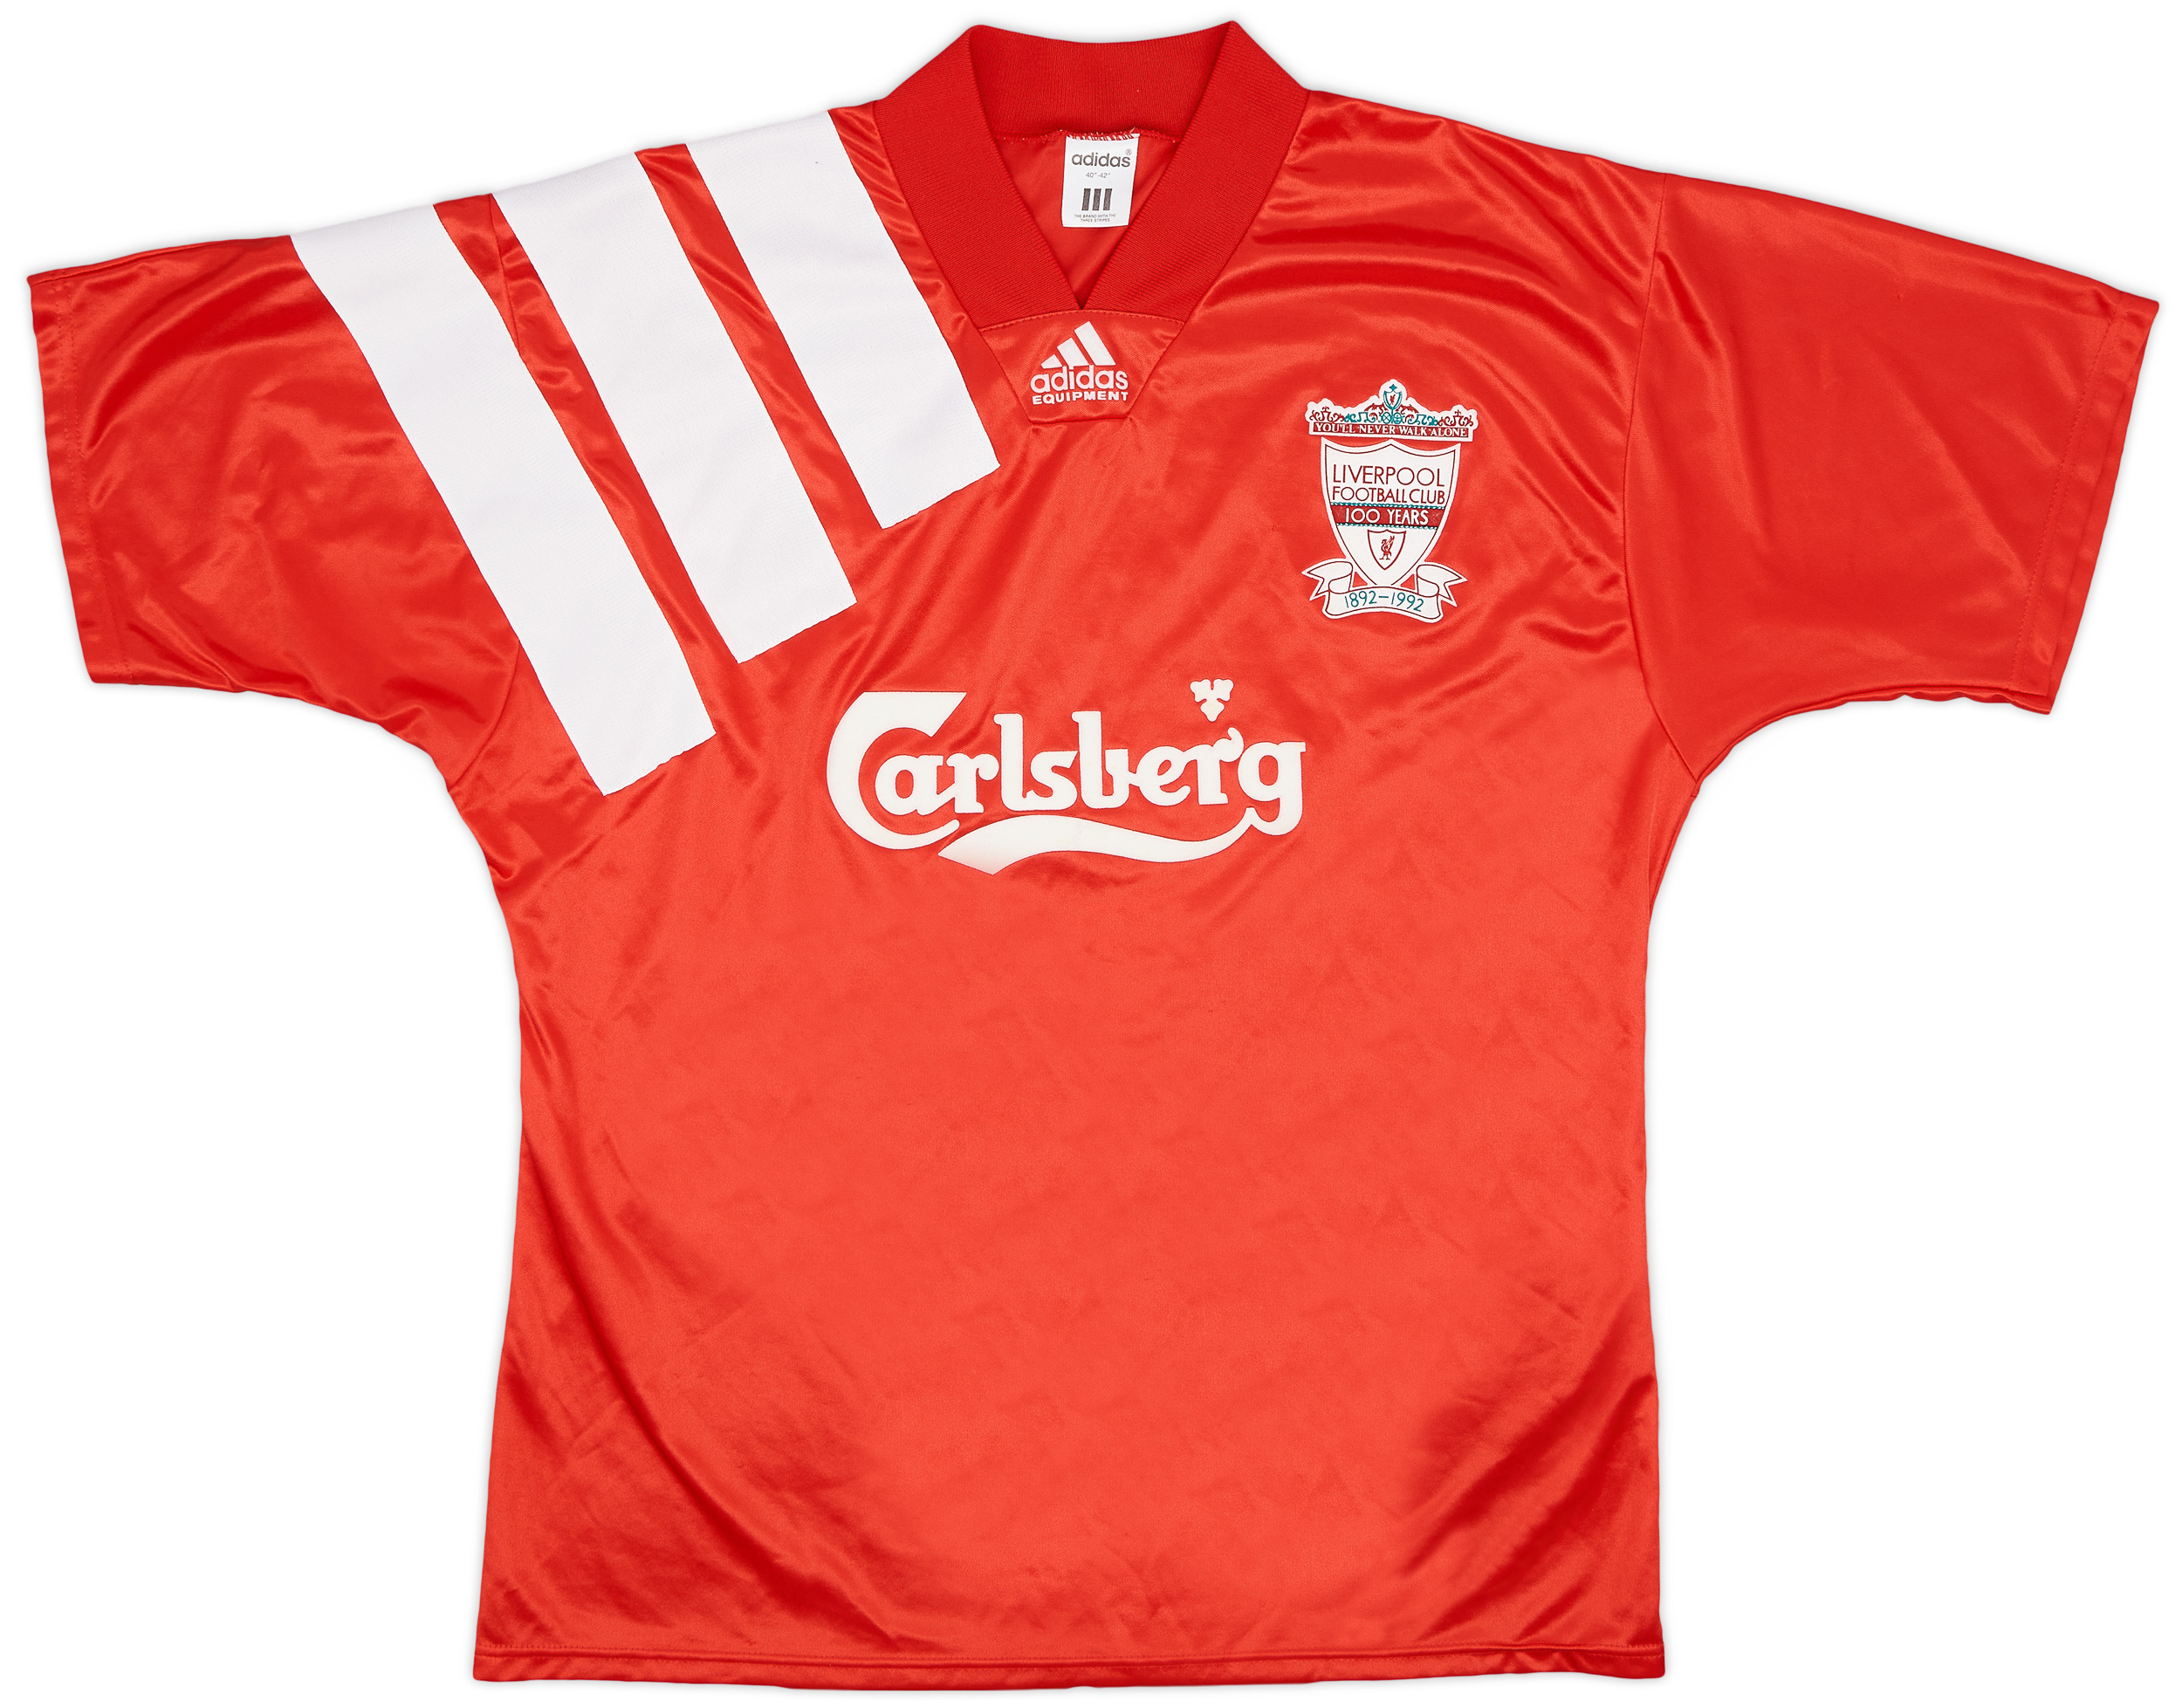 1992-93 Liverpool Centenary Home Shirt - 9/10 - (/)